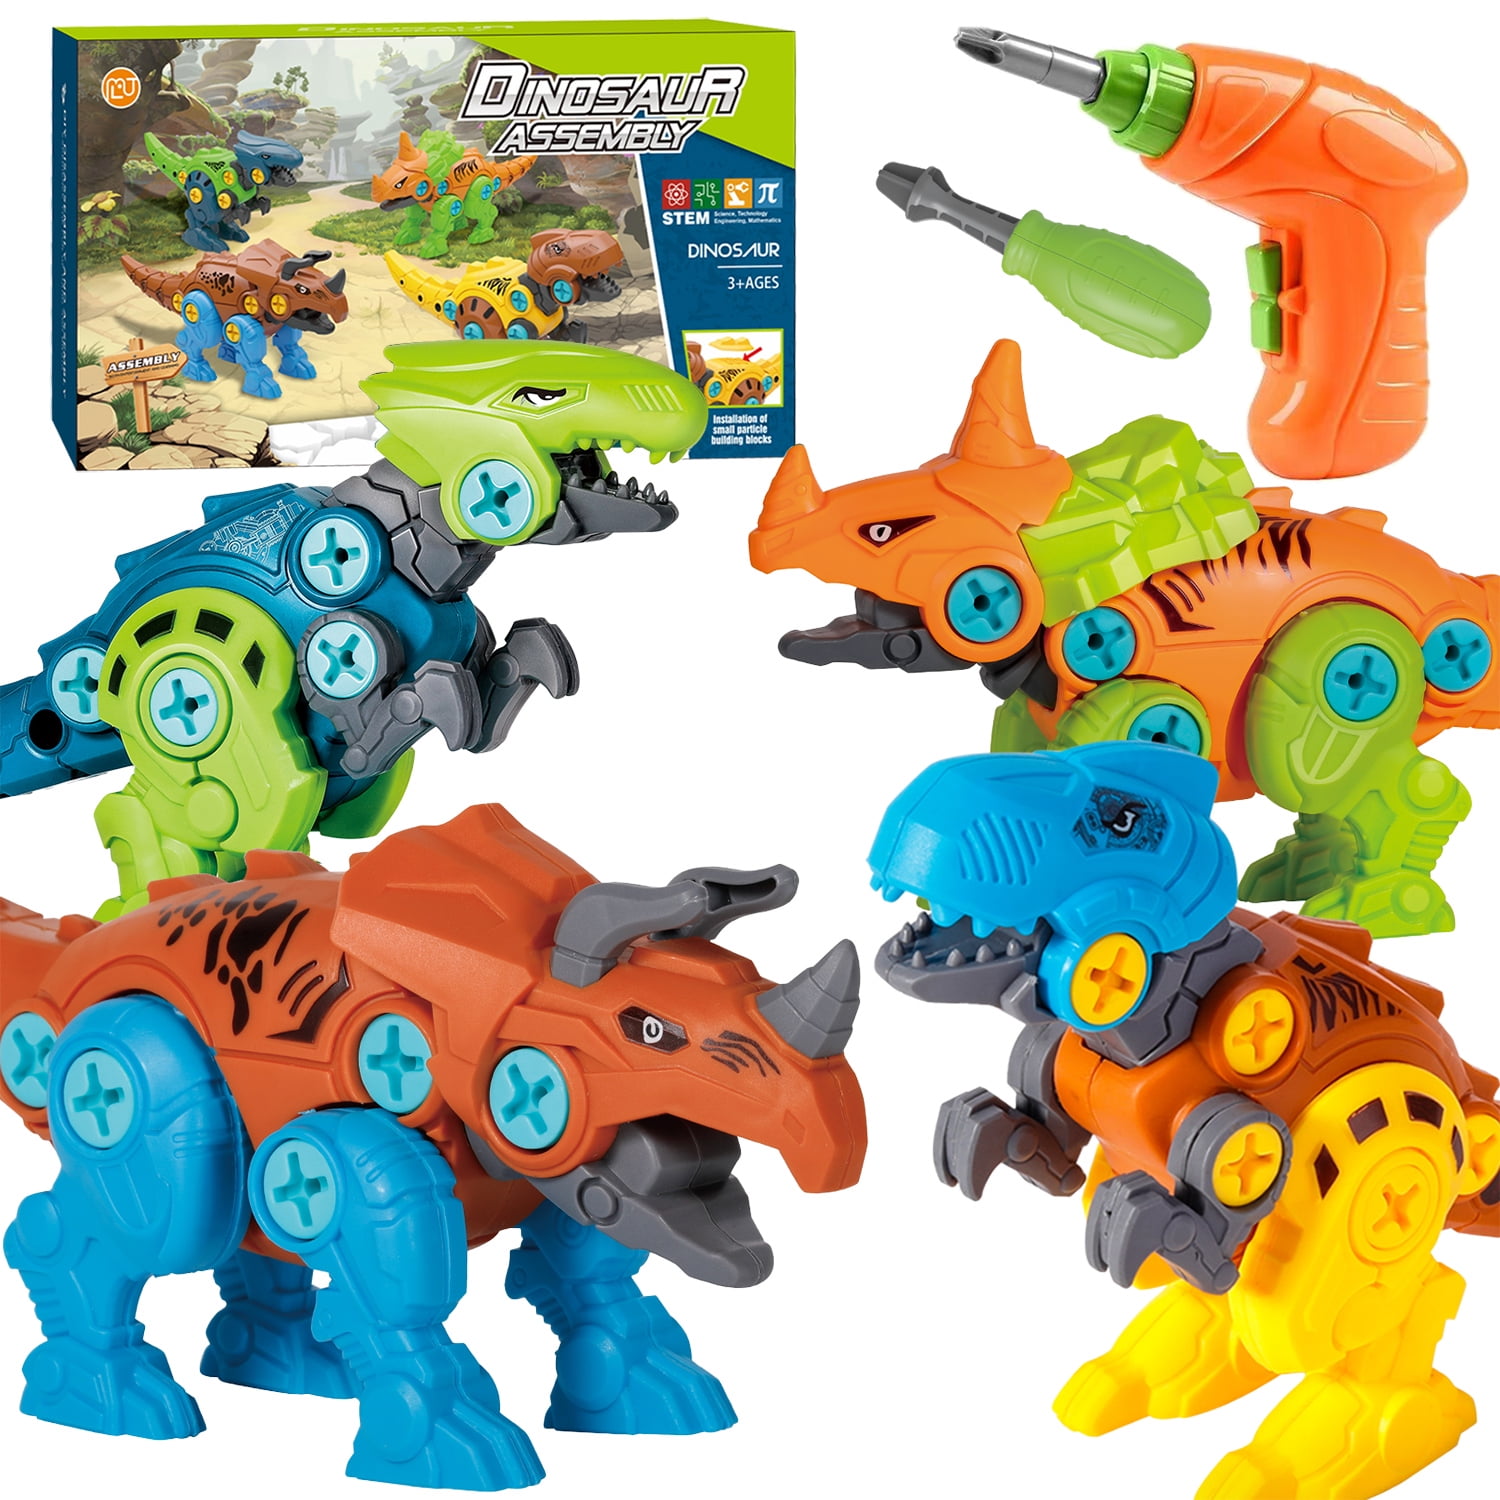 Jurassic Mini Dinosaur Toys Assembled Puzzle Building Blocks 16pcs for Kids 